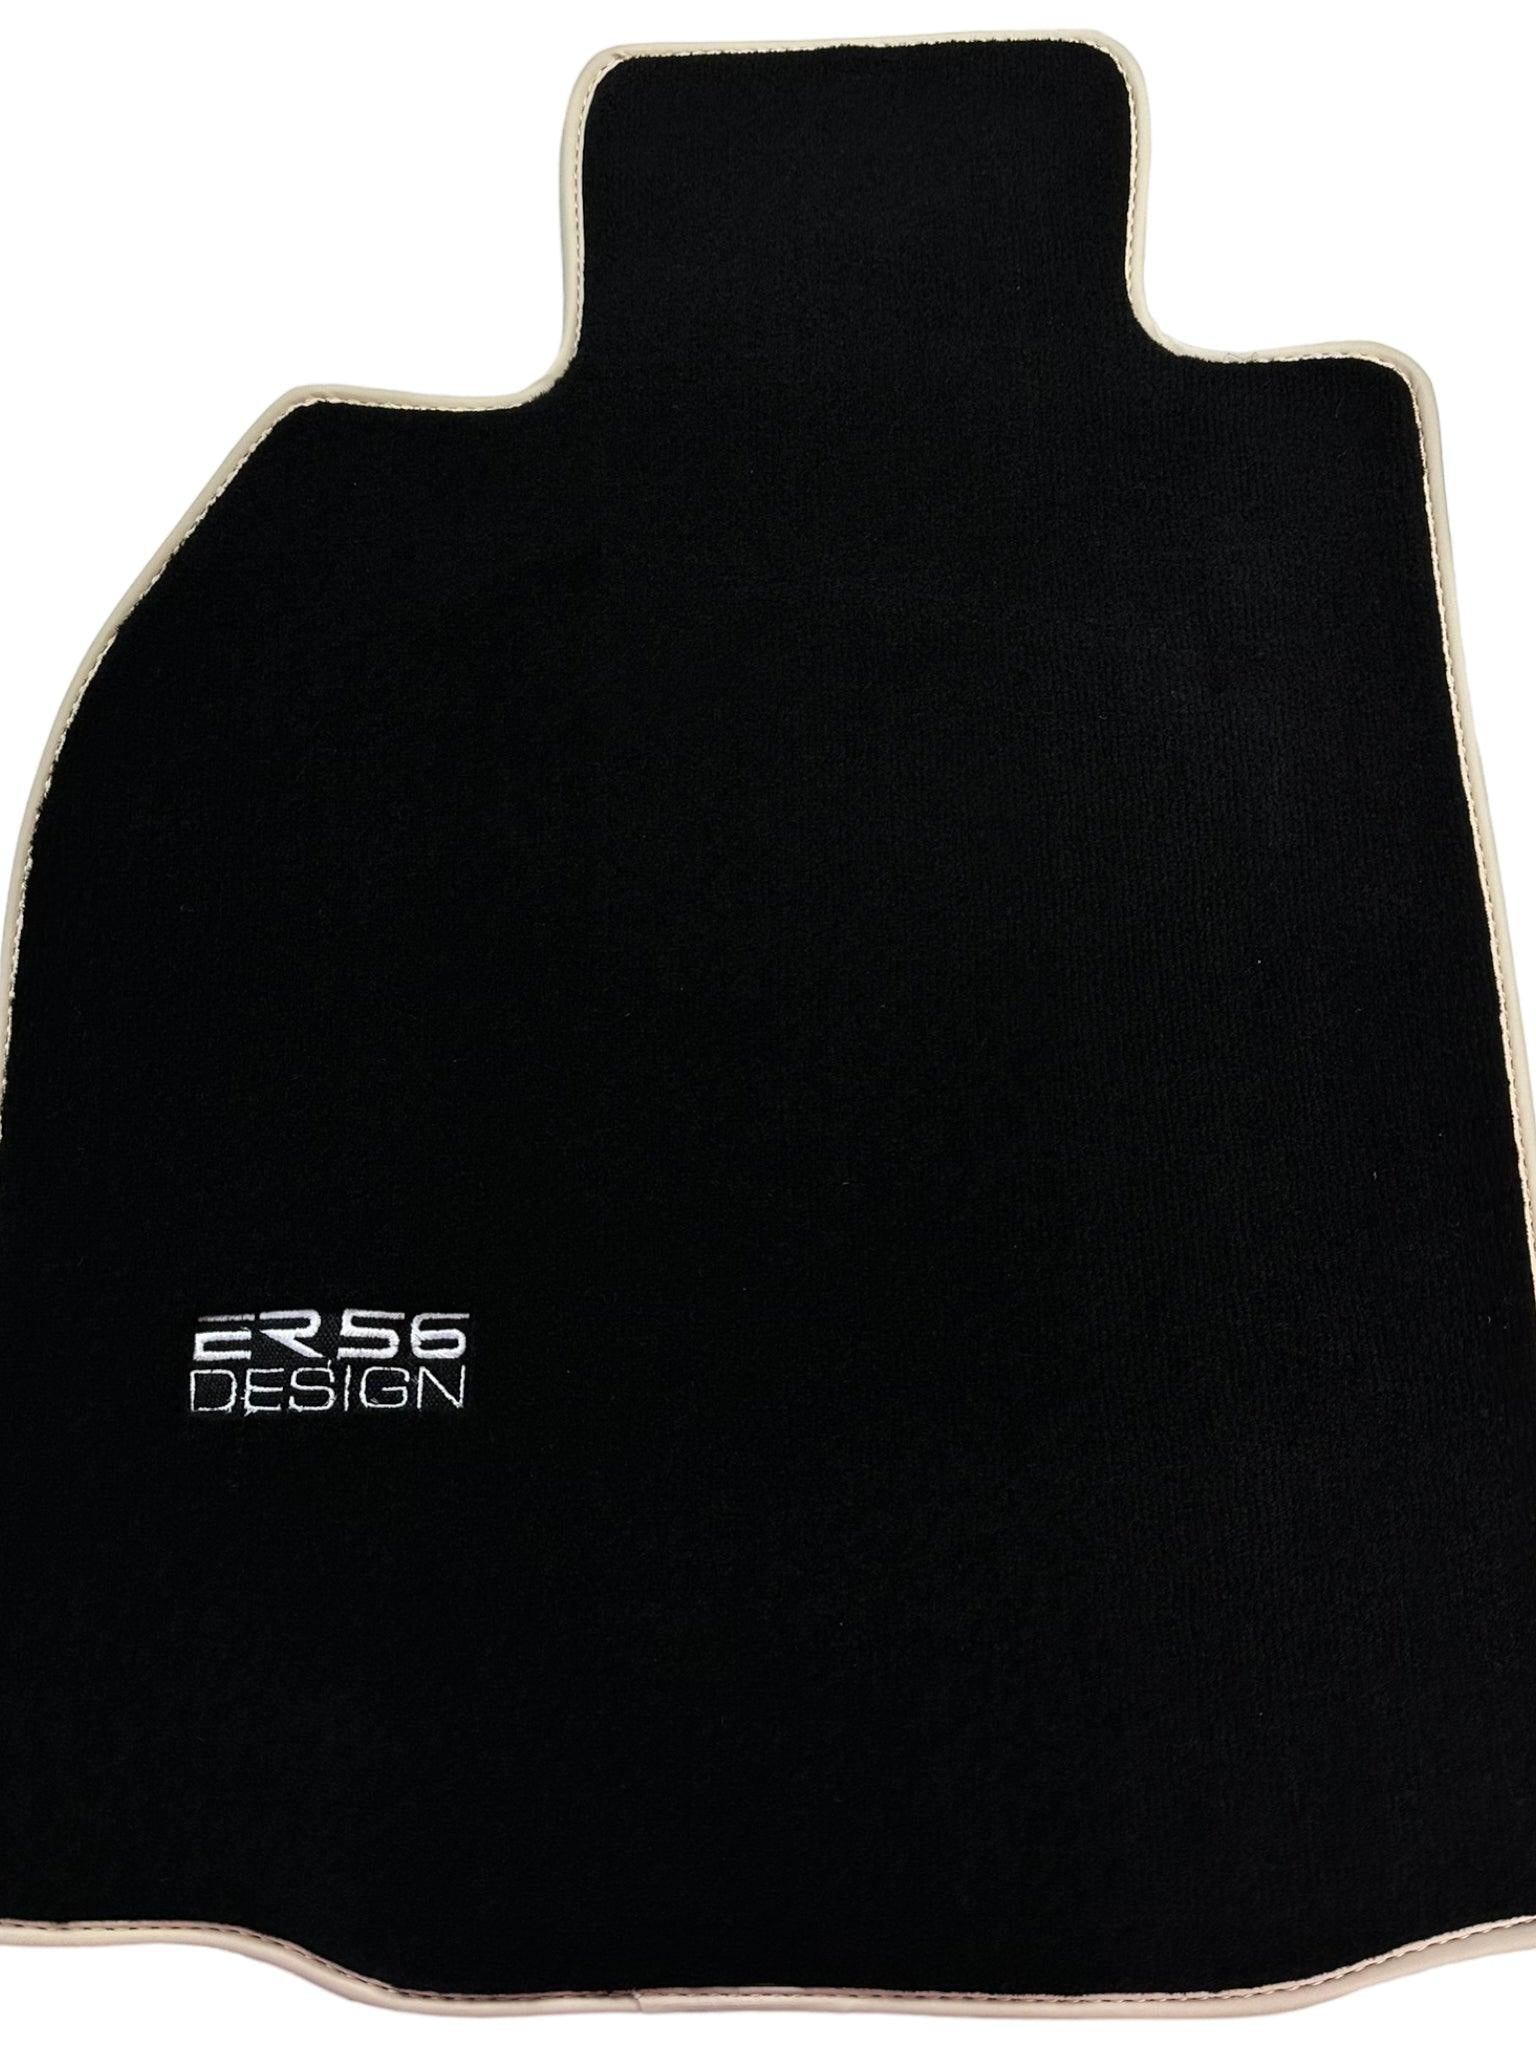 Black Floor Mats for Porsche 911 - 997 (2005-2011) ER56 Design